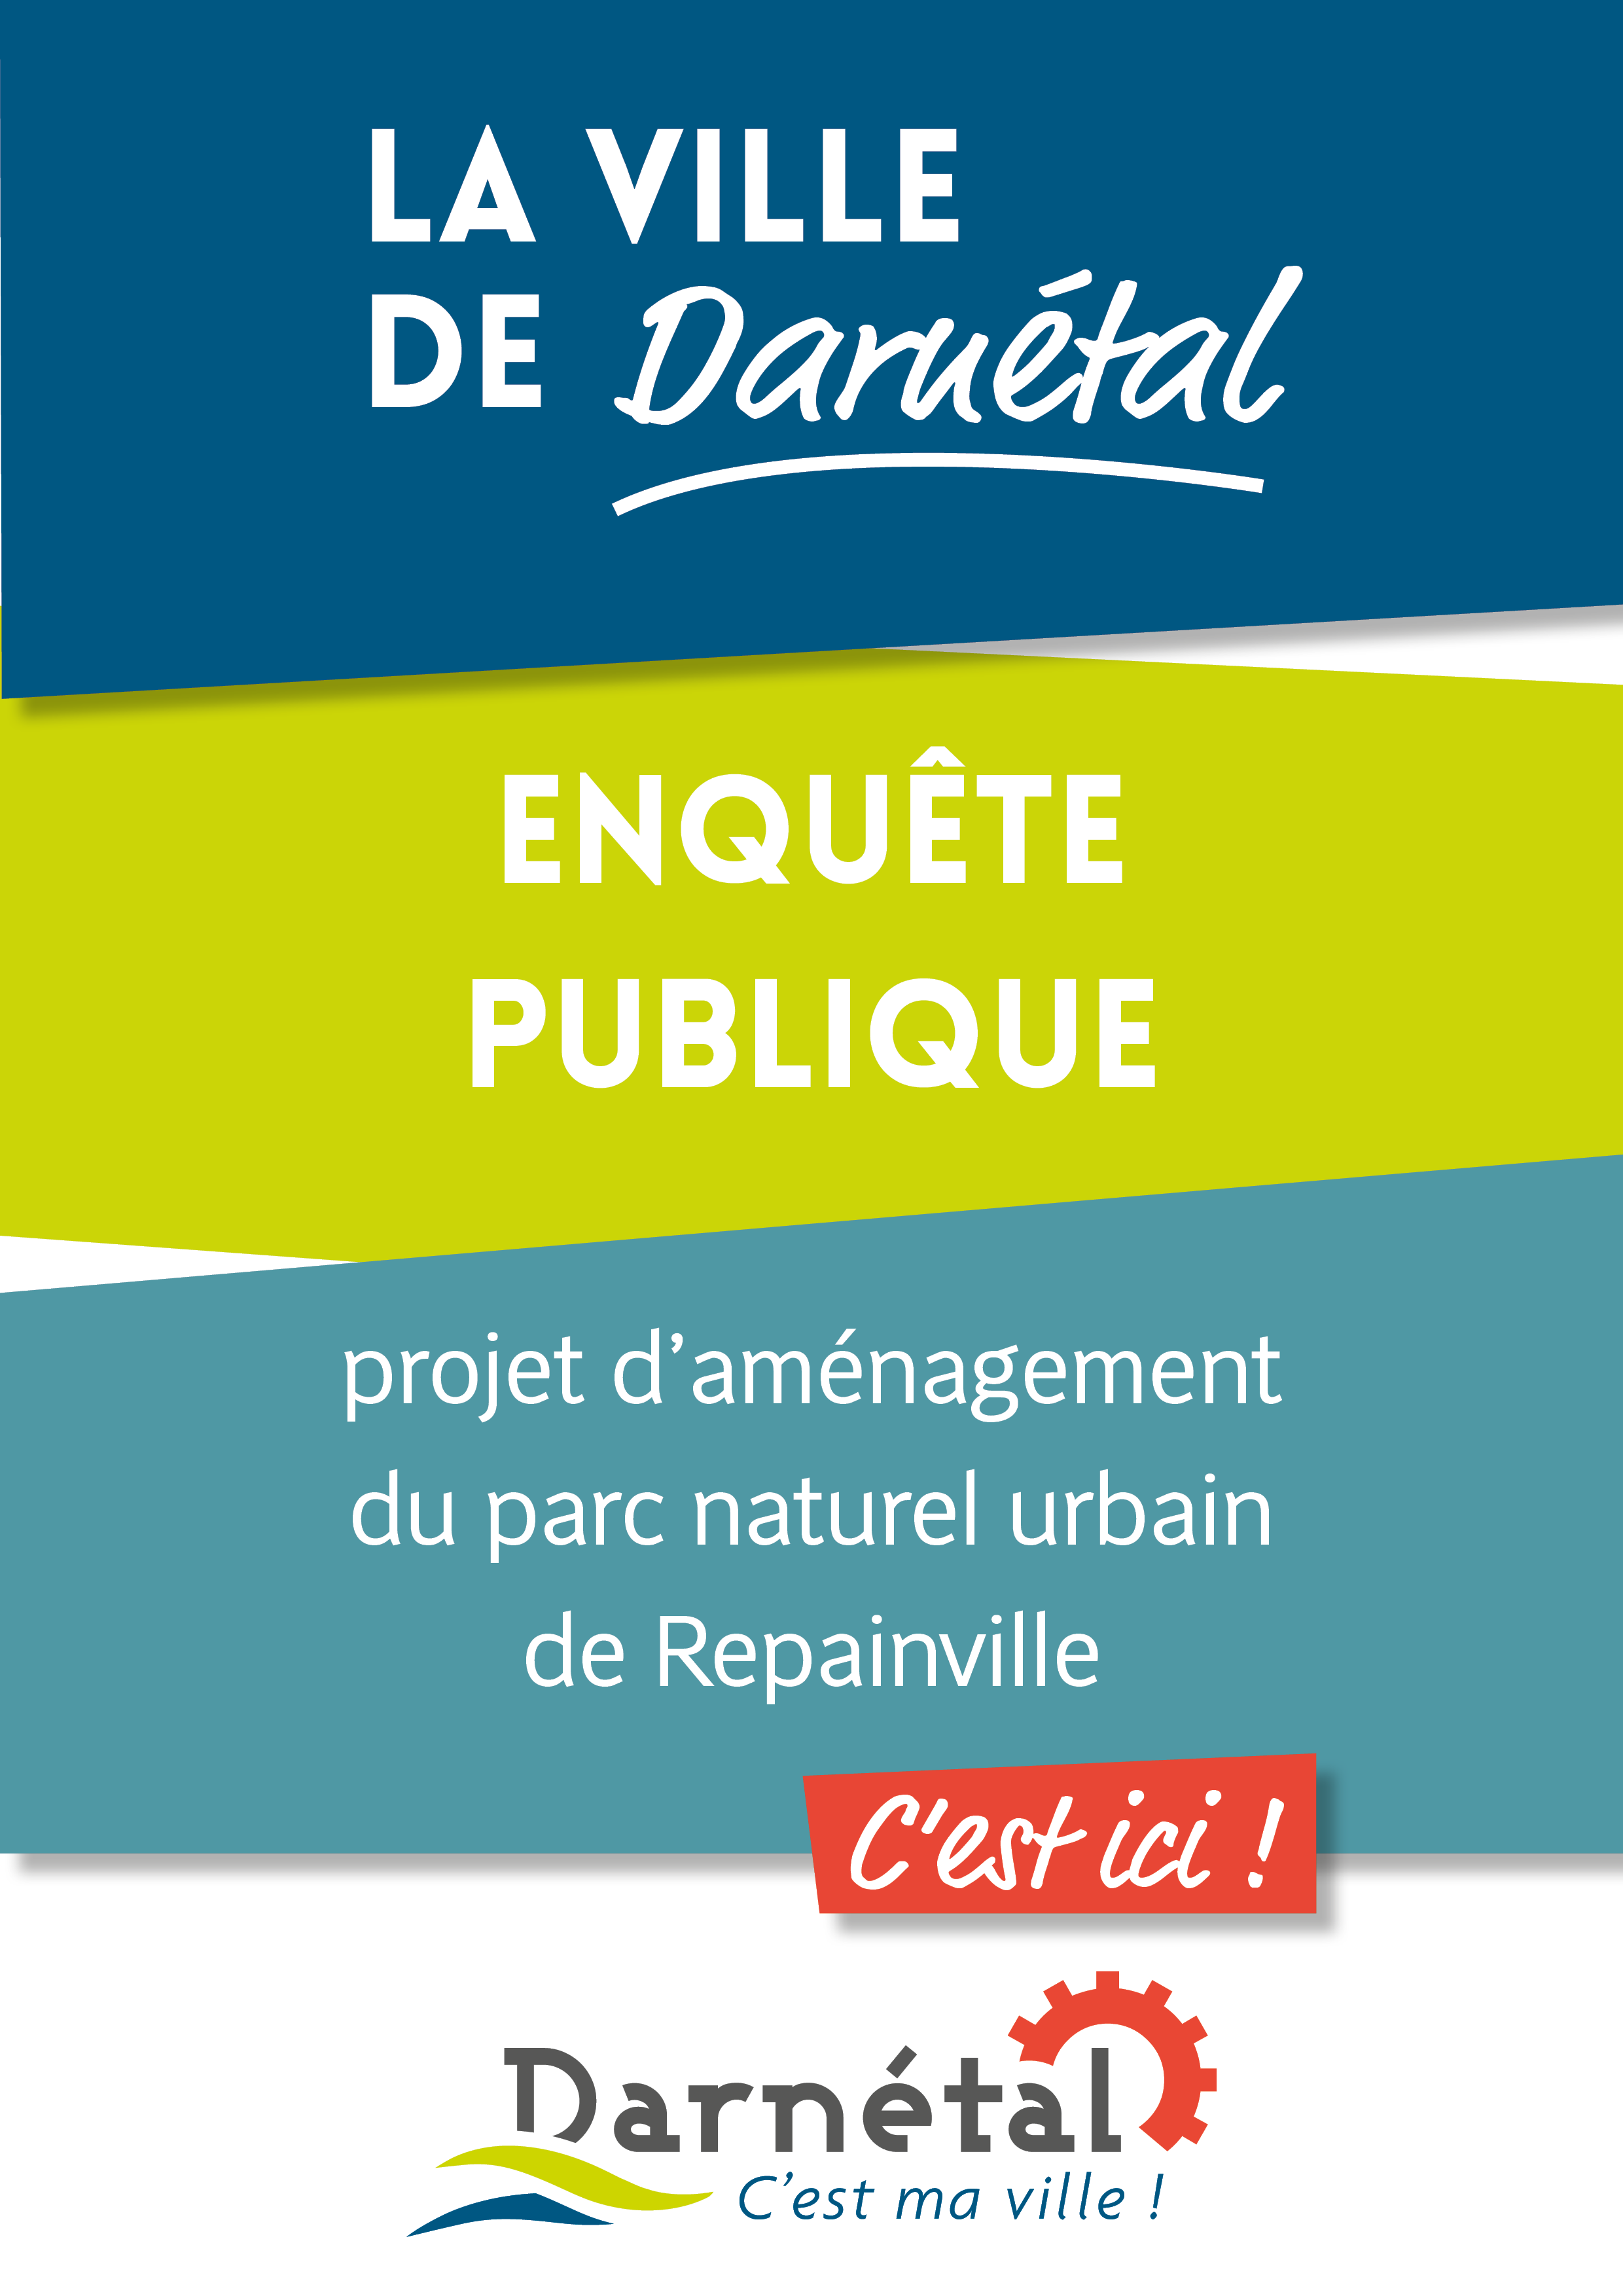 Participez à l’enquête publique du projet d’aménagement du parc naturel urbain de Repainville